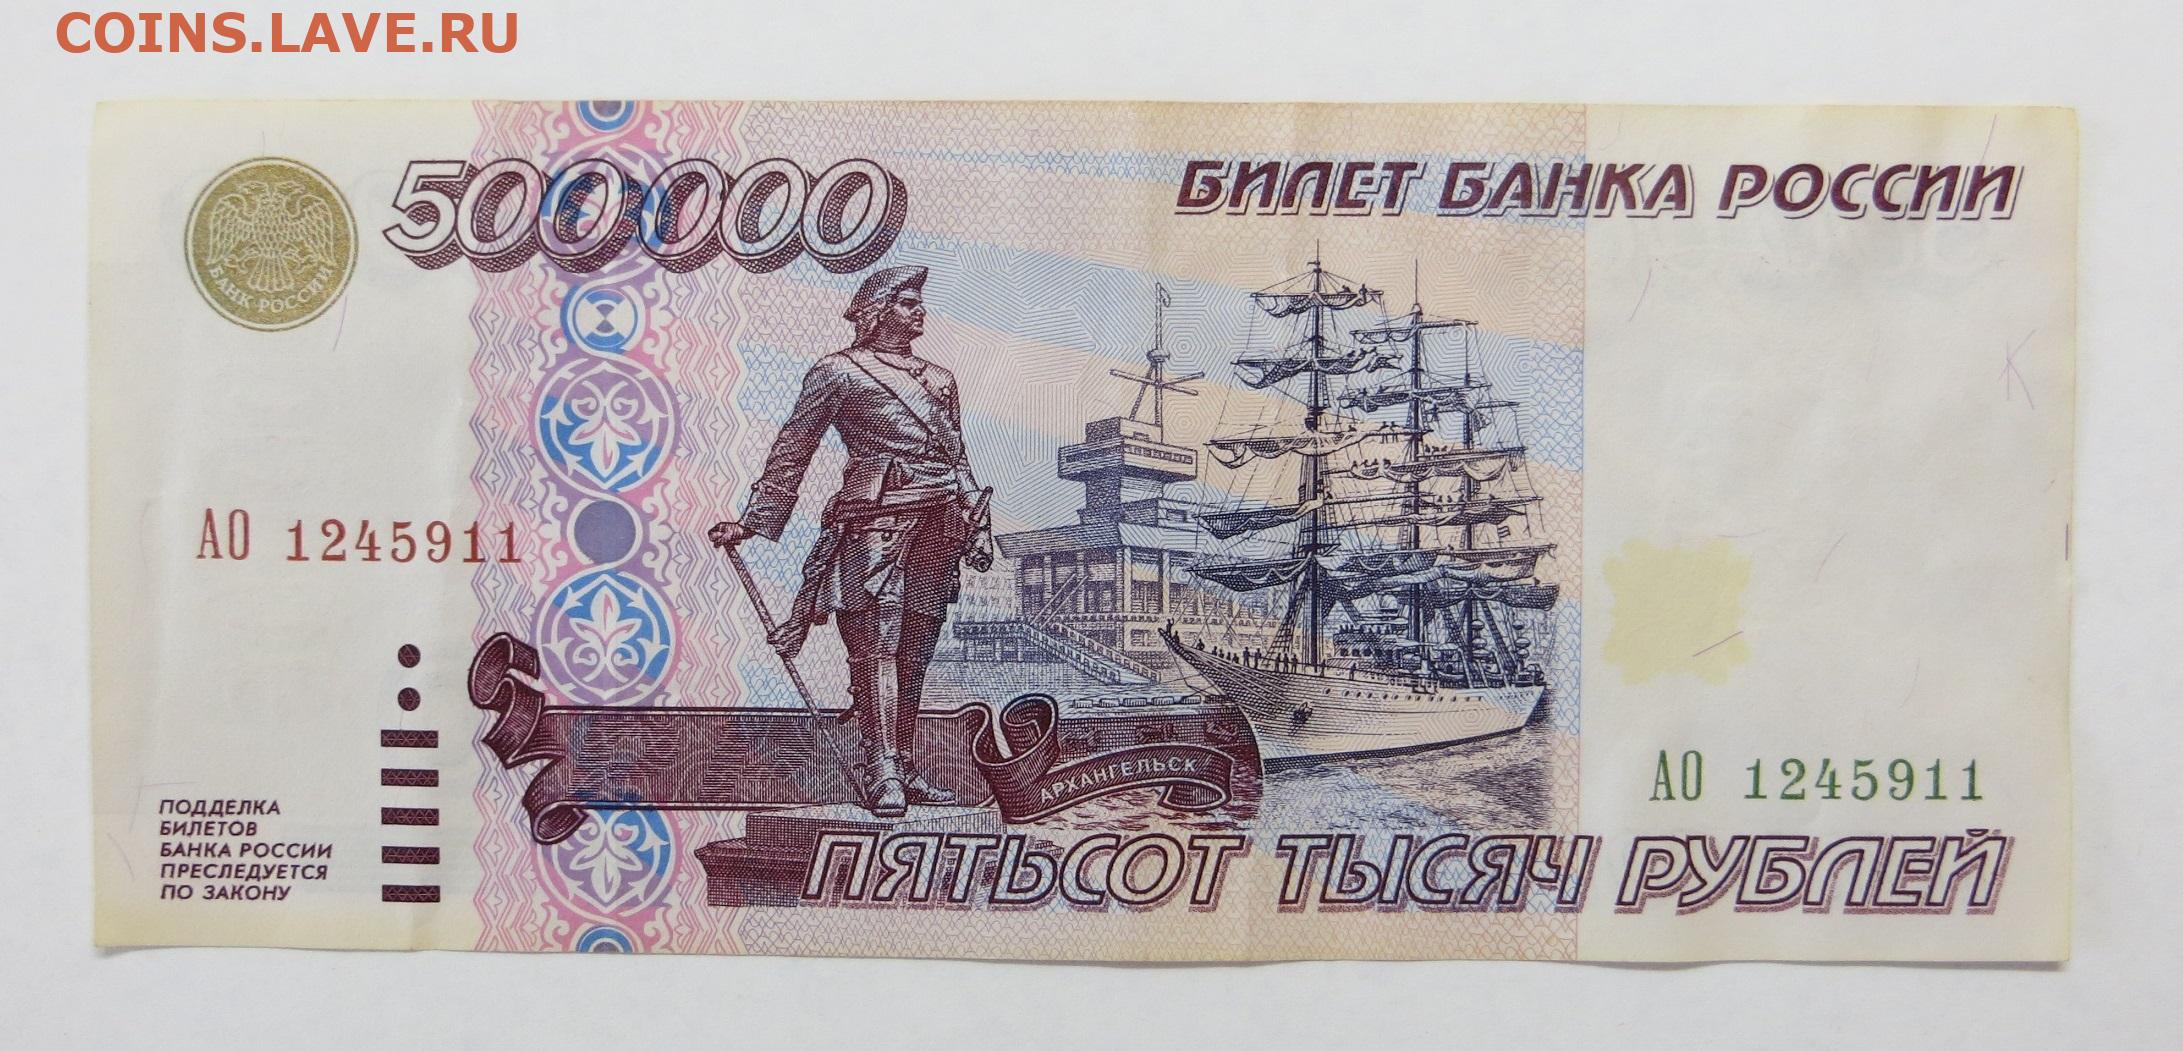 500000 рублей в сумах. 500000 Рублей 1995 года. Купюра 500 000 рублей 1995. Бумажные деньги 1995 года. 500 000 Рублей 1995 года.